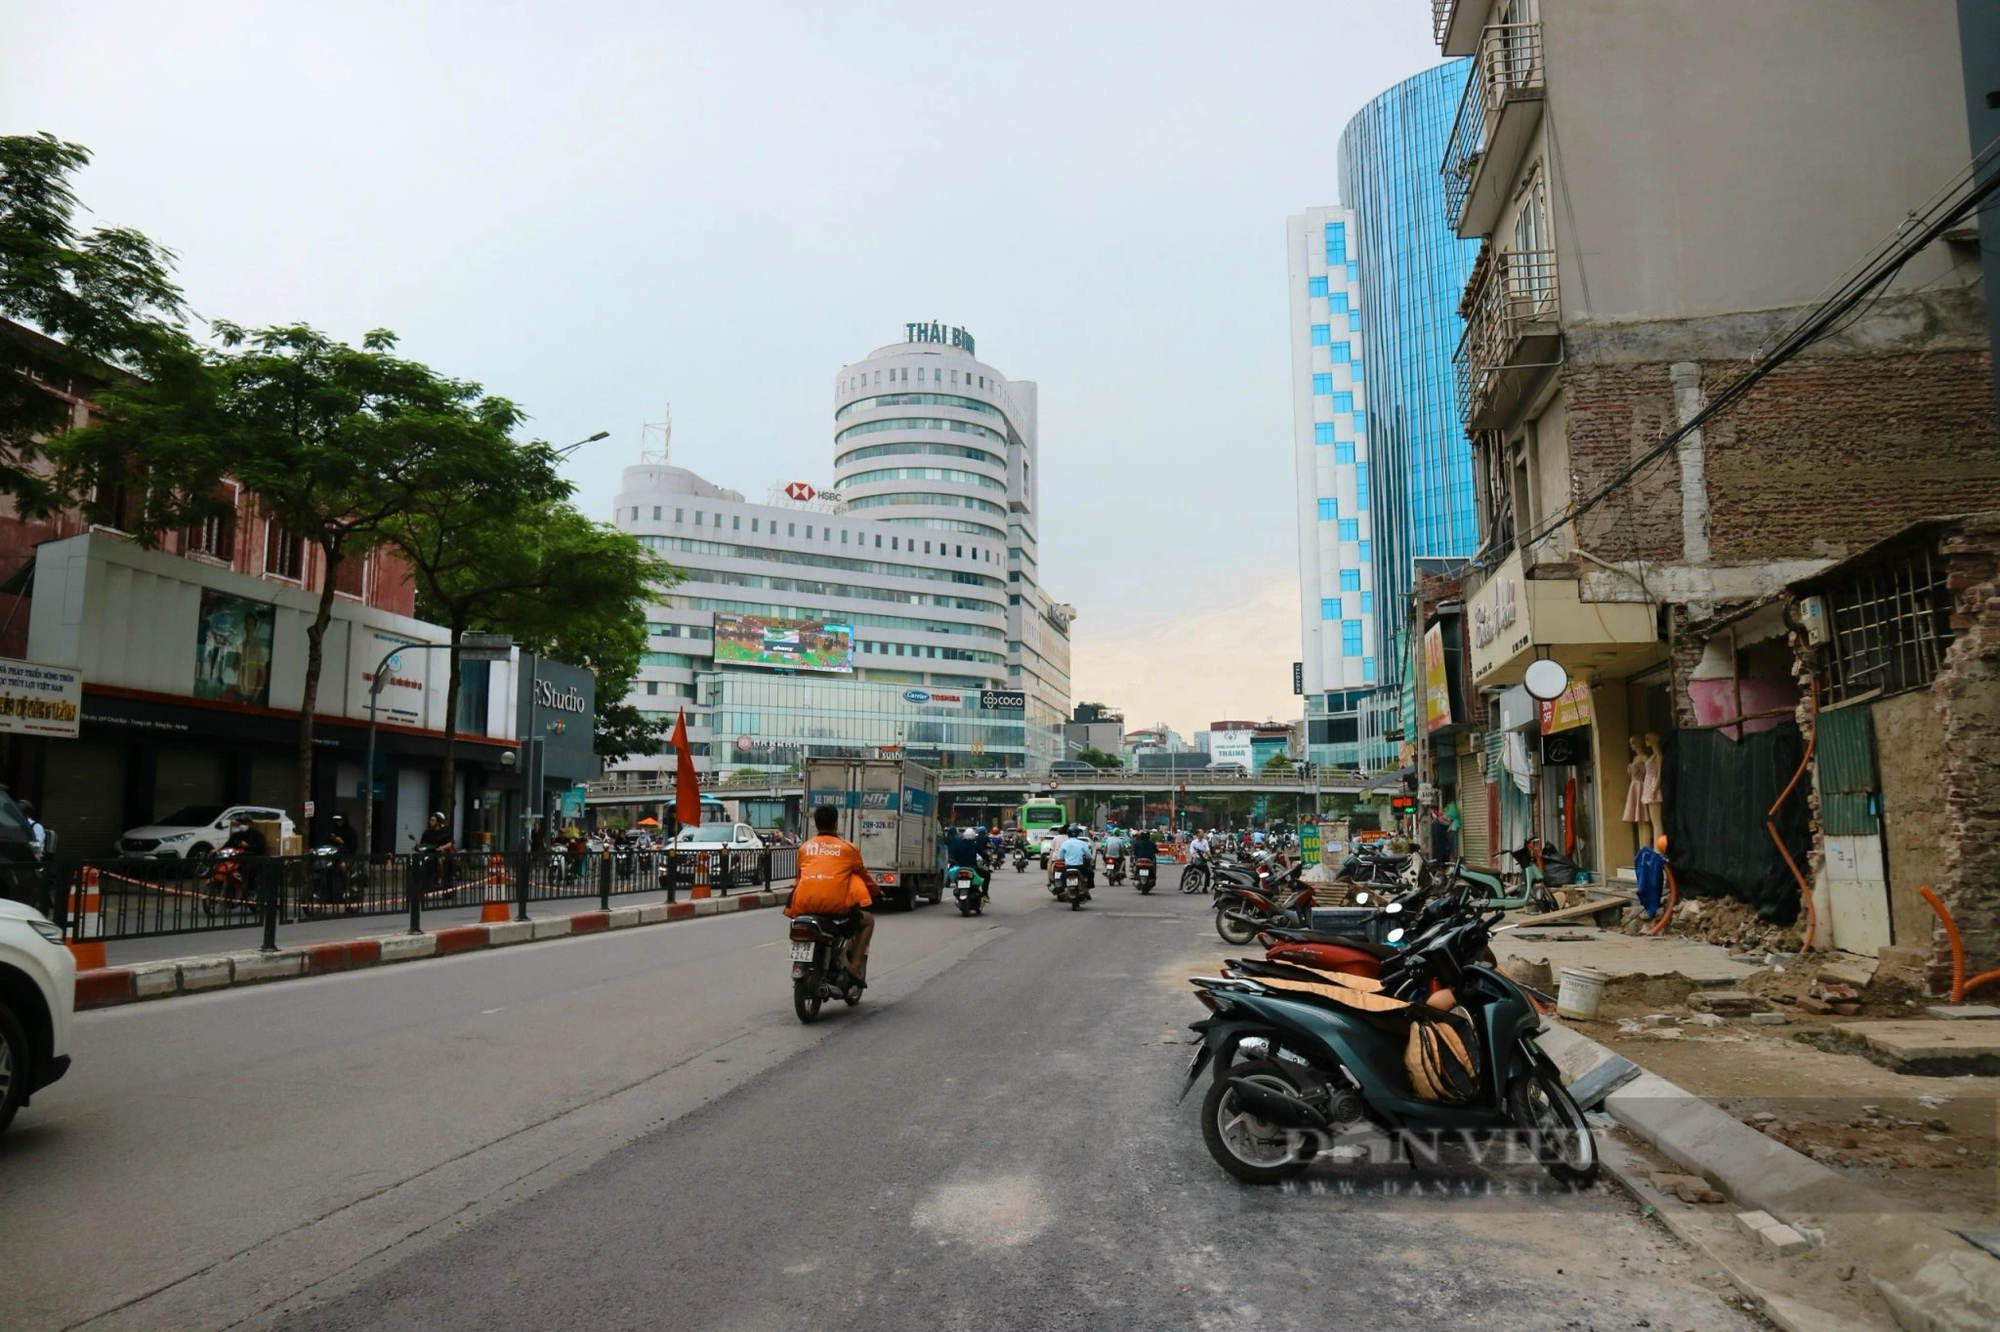 Dự án cải tạo nút giao thông Chùa Bộc – Thái Hà, gần hoàn thiện sau hàng chục năm triển khai- Ảnh 2.